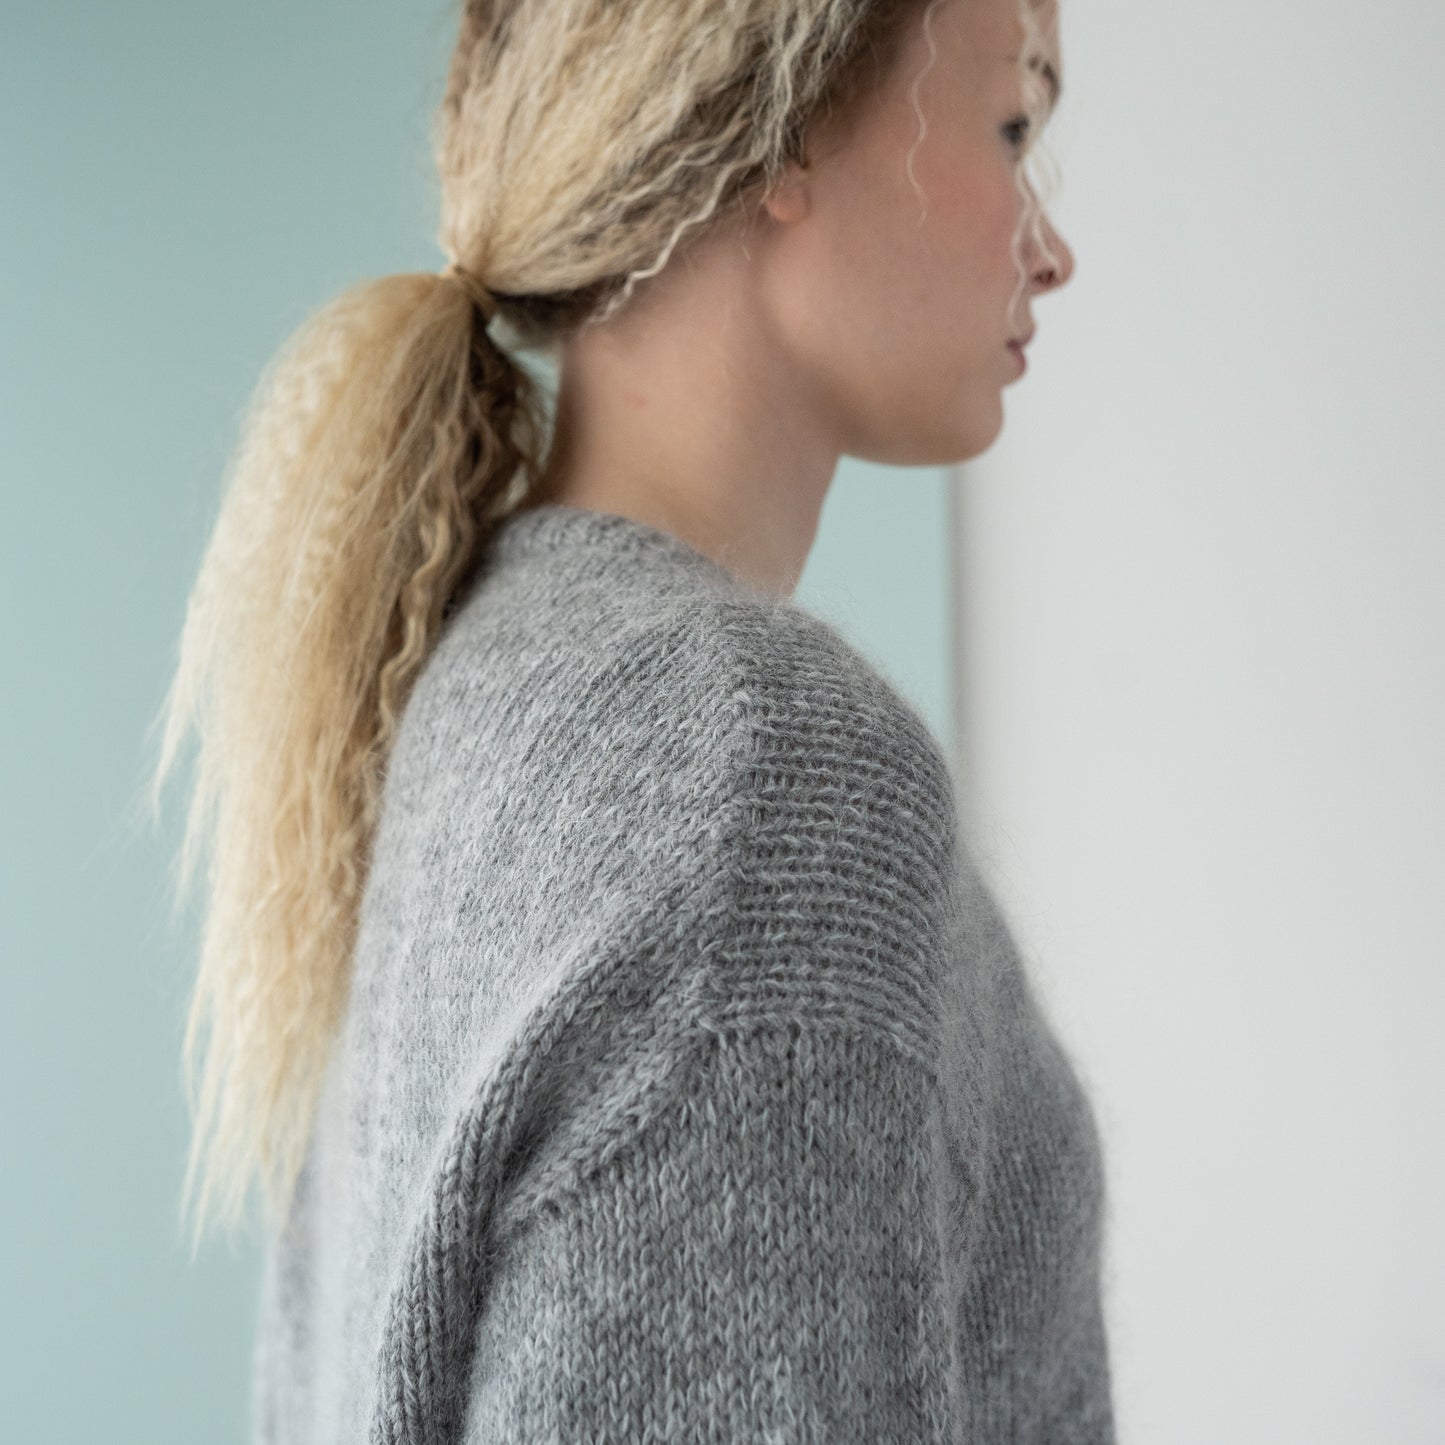 Daydream Sweater Opskrift- gratis sammen med garn